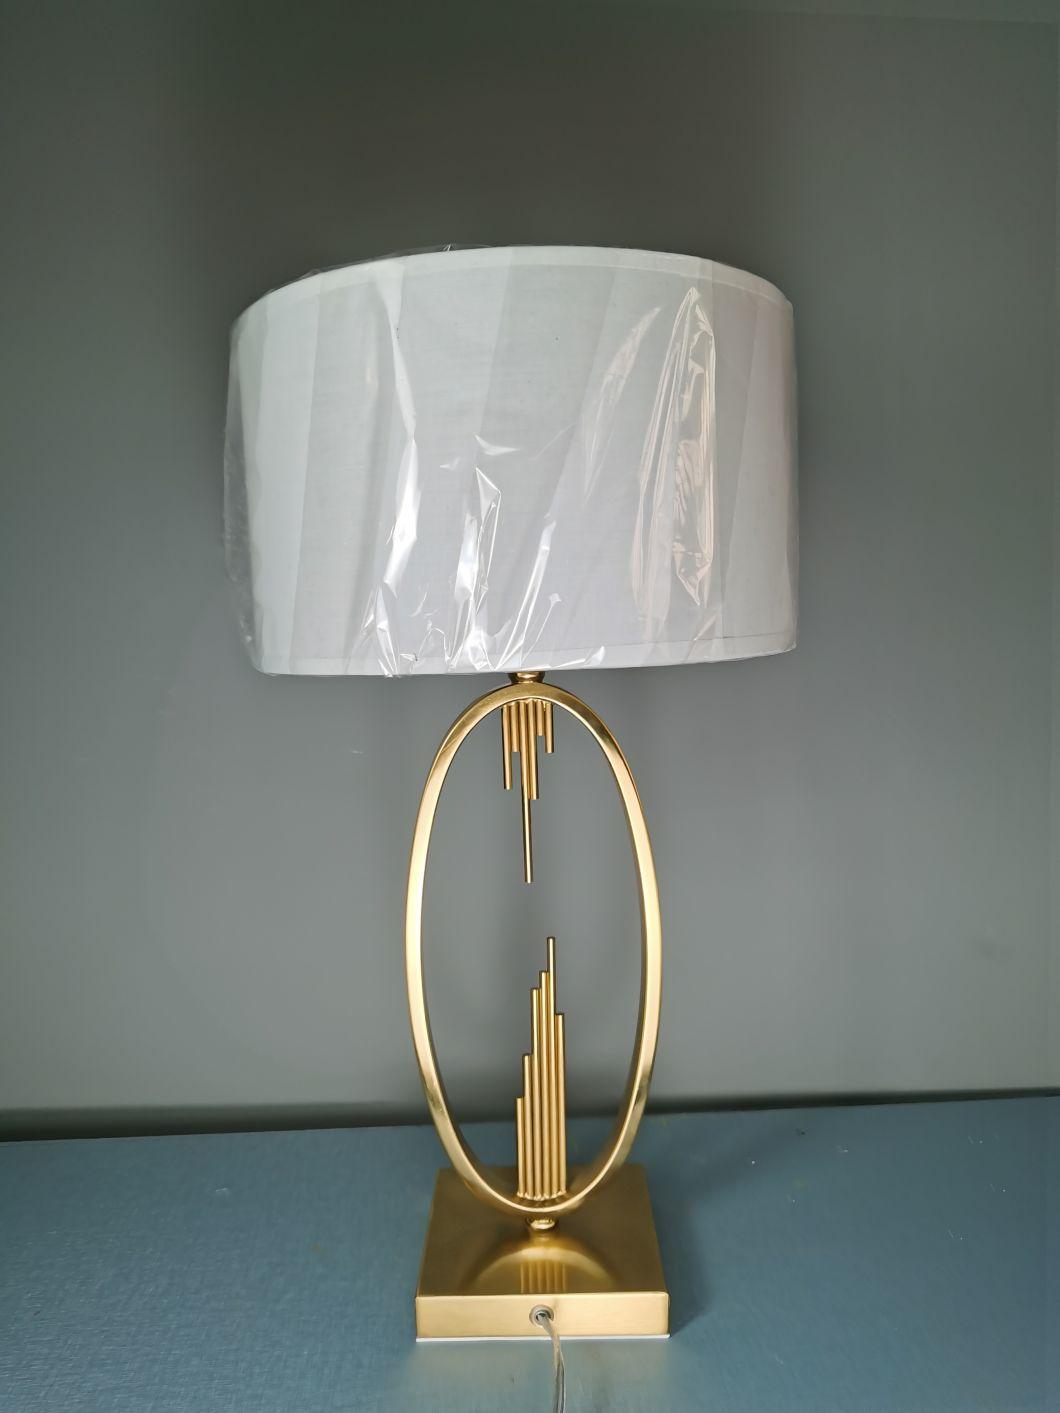 Postmodern Light Luxury Table Lamp Living Room Model Room Bedroom Bedside Table Creative European Simple Minimalist Bedside Lamp